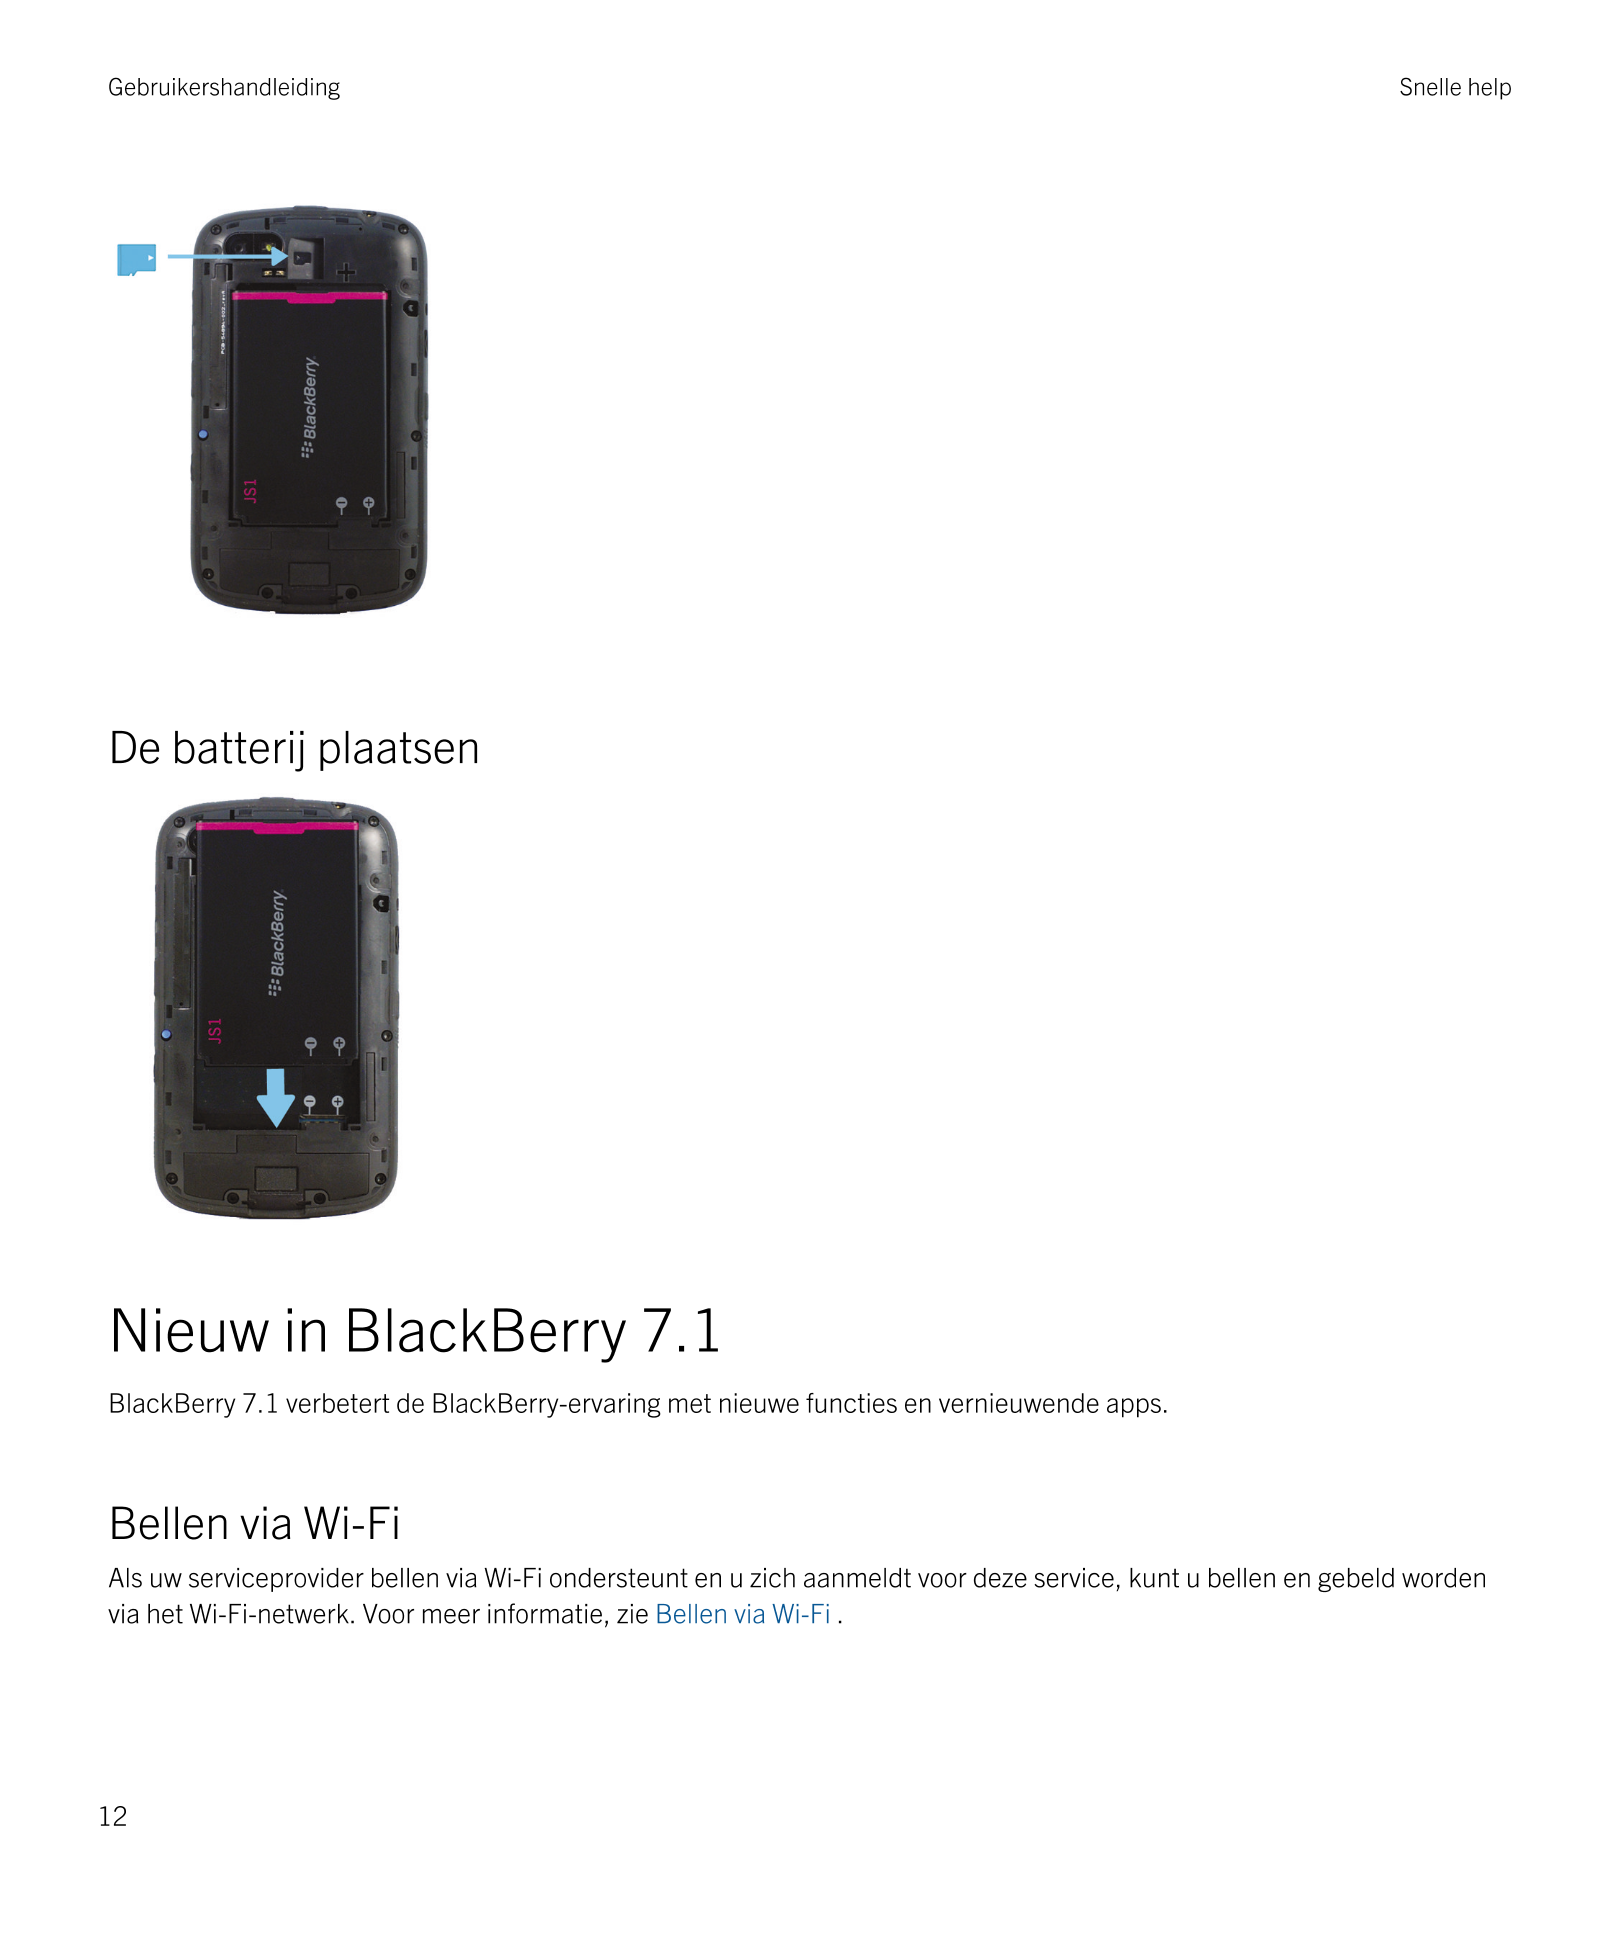 Gebruikershandleiding Snelle help
De batterij plaatsen
Nieuw in  BlackBerry 7.1
BlackBerry 7.1 verbetert de  BlackBerry-ervaring